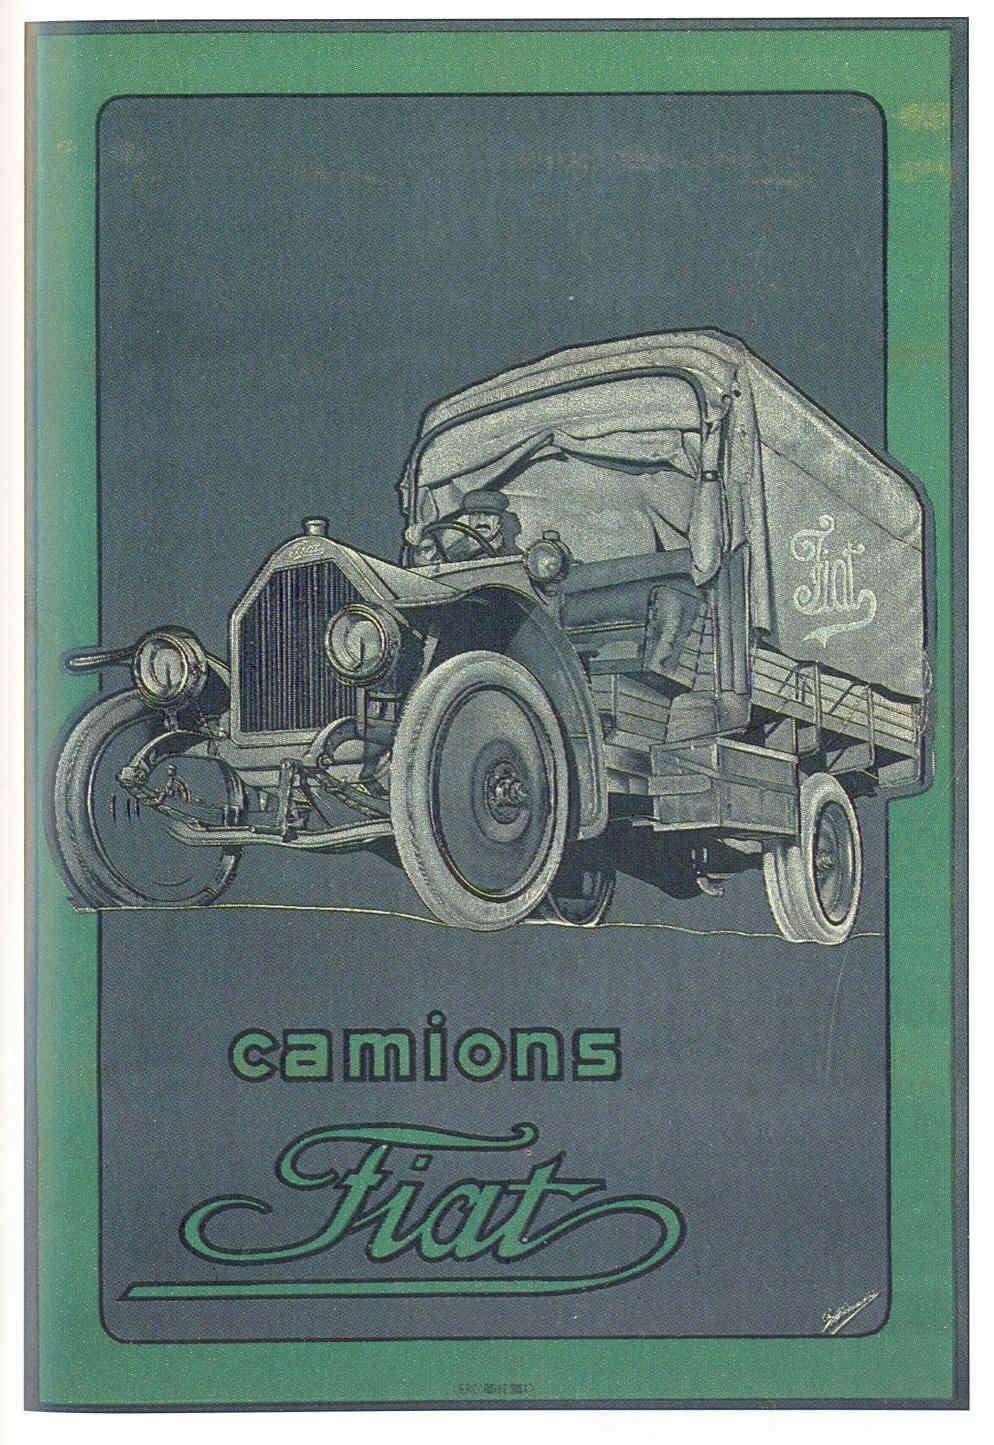  Реклама автомобиля Fiat 15 ter. «Ter» - означает «третья модификация», 1916 года. С учетом опыта эксплуатации в Ливийской кампании 1912 - 1913 гг. в модель Fiat 15 вносились изменения. В частности, колеса артиллерийского типа с деревянными спицами были заменены штампованными, цельнометаллическими. Автомобиль грузоподъемностью 1,5 т оснащался рядным карбюраторным 4-цилиндровым двигателем водяного охлаждения рабочим объемом 4,0 л и мощностью 35 л.с.